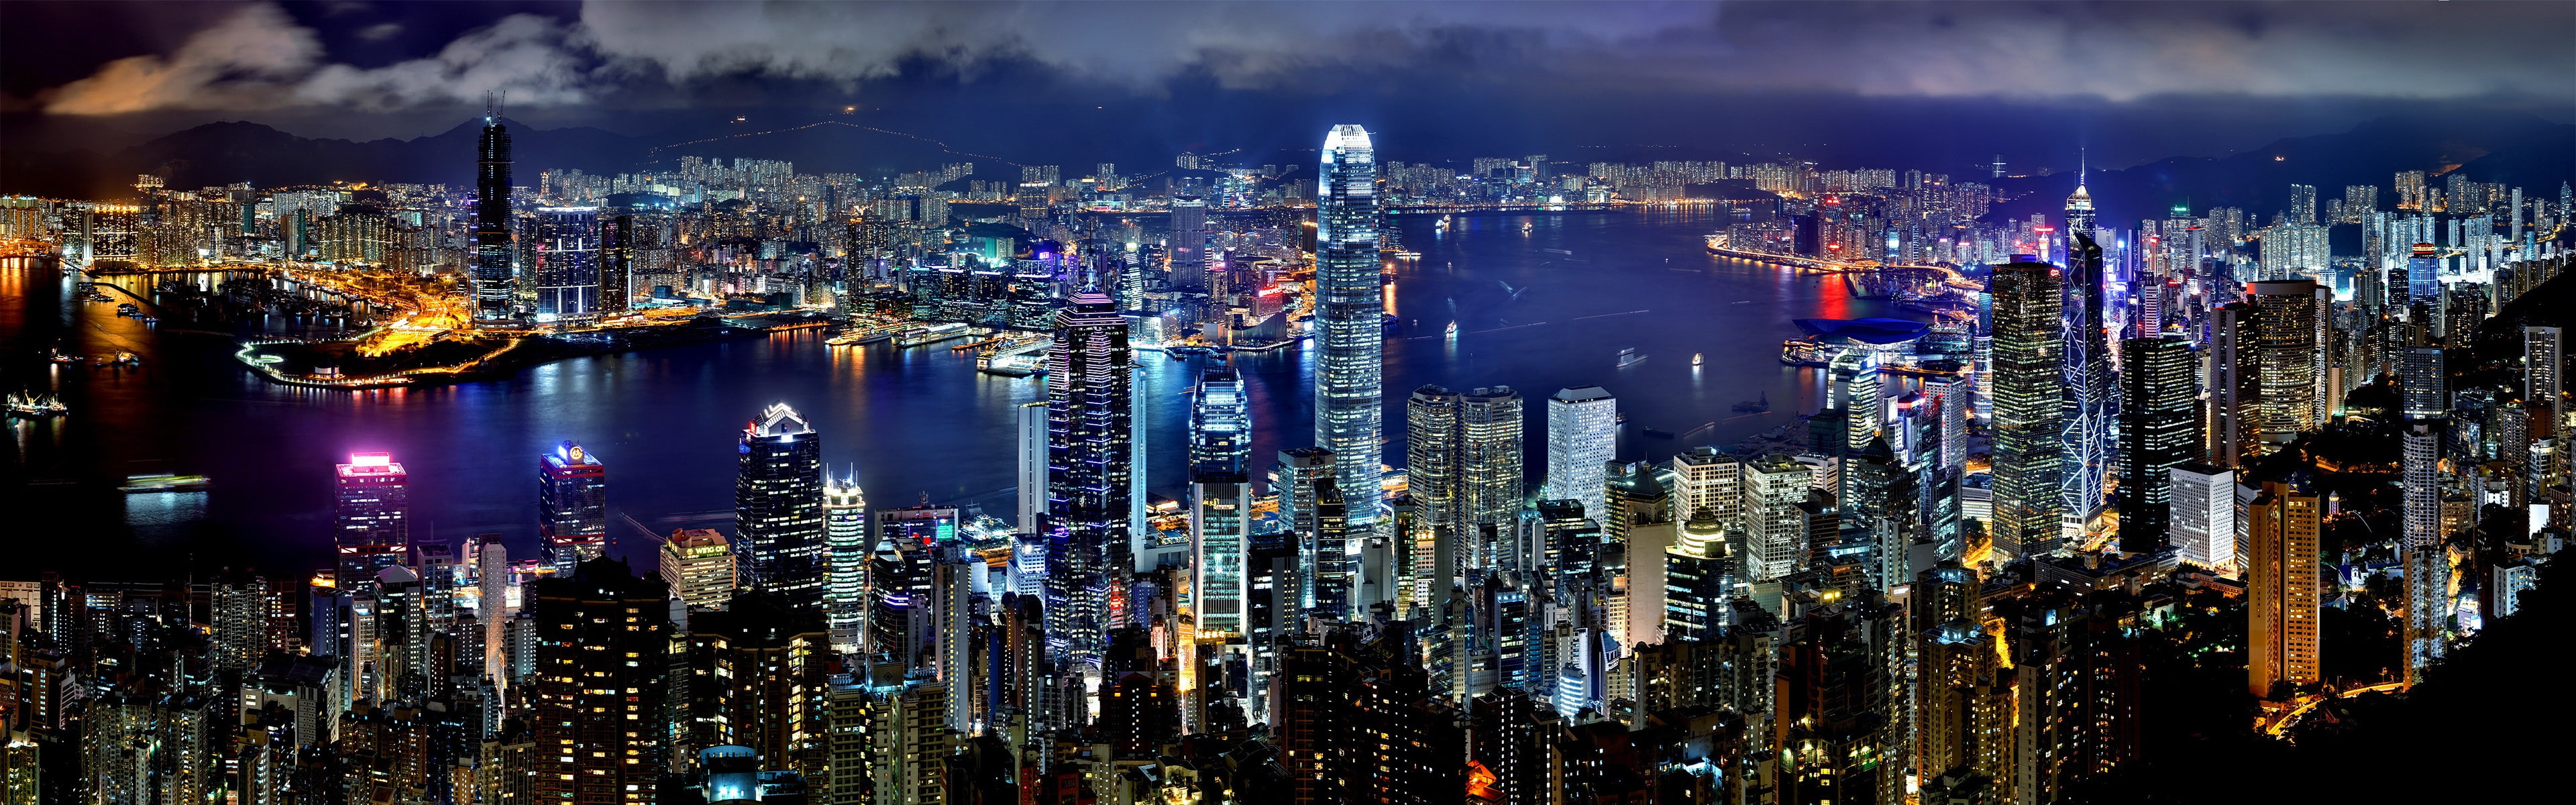 city establishments, Hong Kong, night, harbor, skyscraper, building